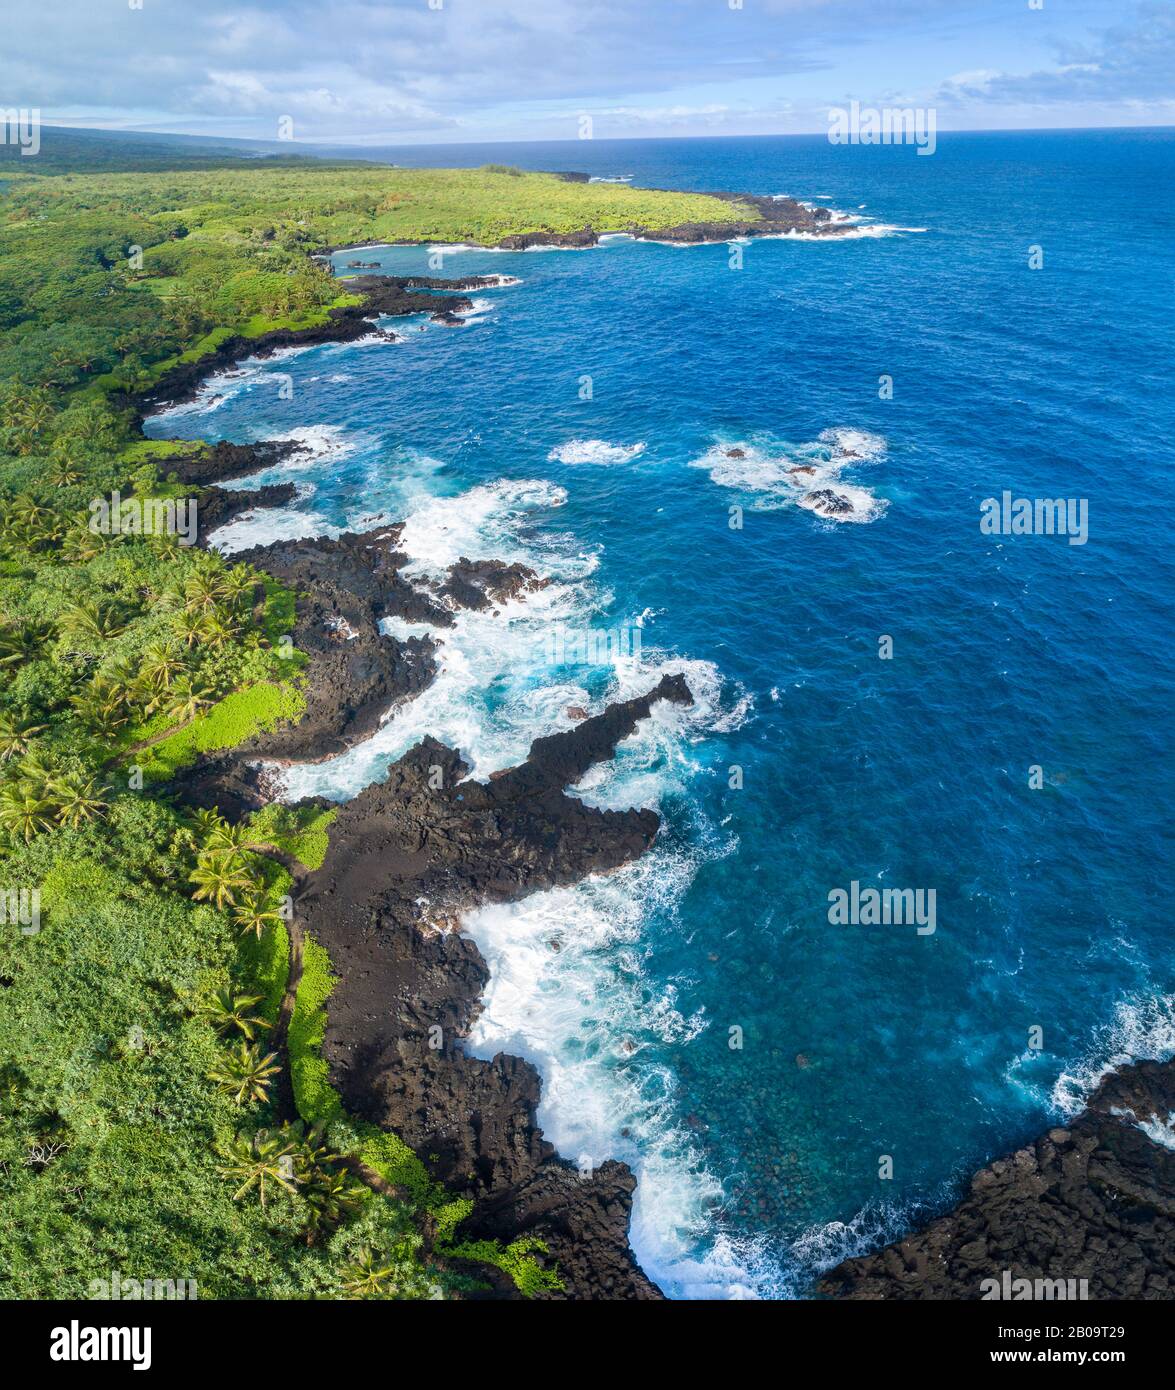 Vue aérienne sur la côte au parc national de Waianapanapa, Hana, Maui, Hawaï. La célèbre plage de sable noir est dans la baie au sommet du cadre. Fiv Banque D'Images